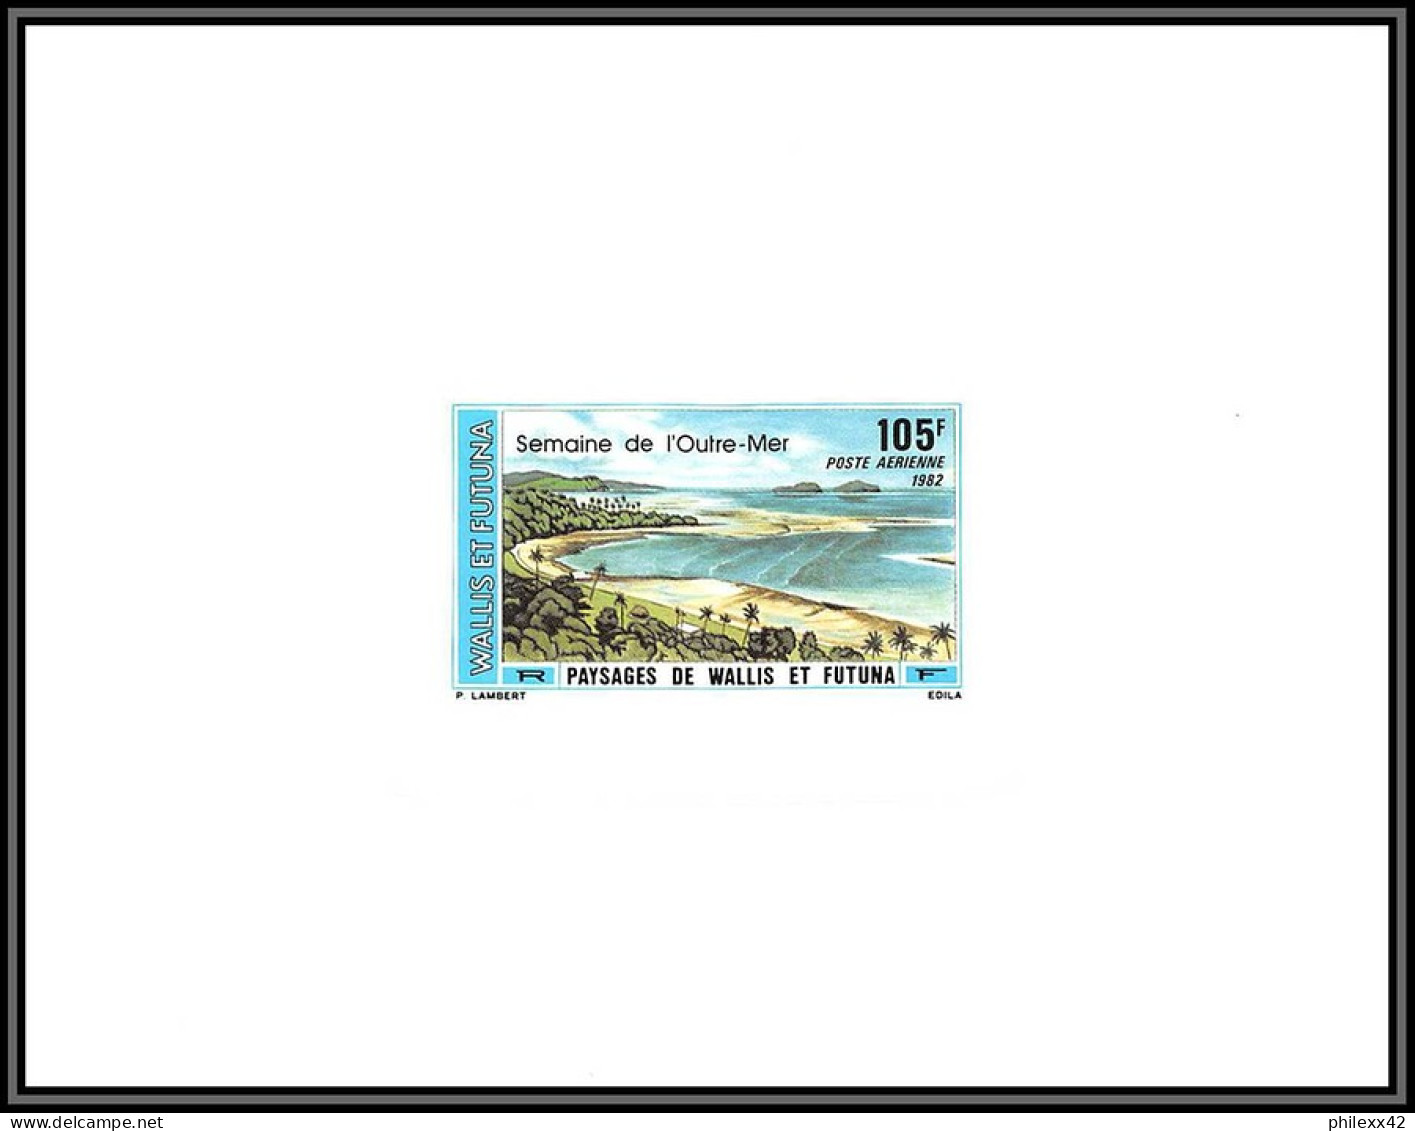 91750c Wallis Et Futuna PA N° 118 Semaine De L OUTRE-MER Paysages Non Dentelé Imperforate ** MNH Epreuve De Luxe Proof - Non Dentelés, épreuves & Variétés